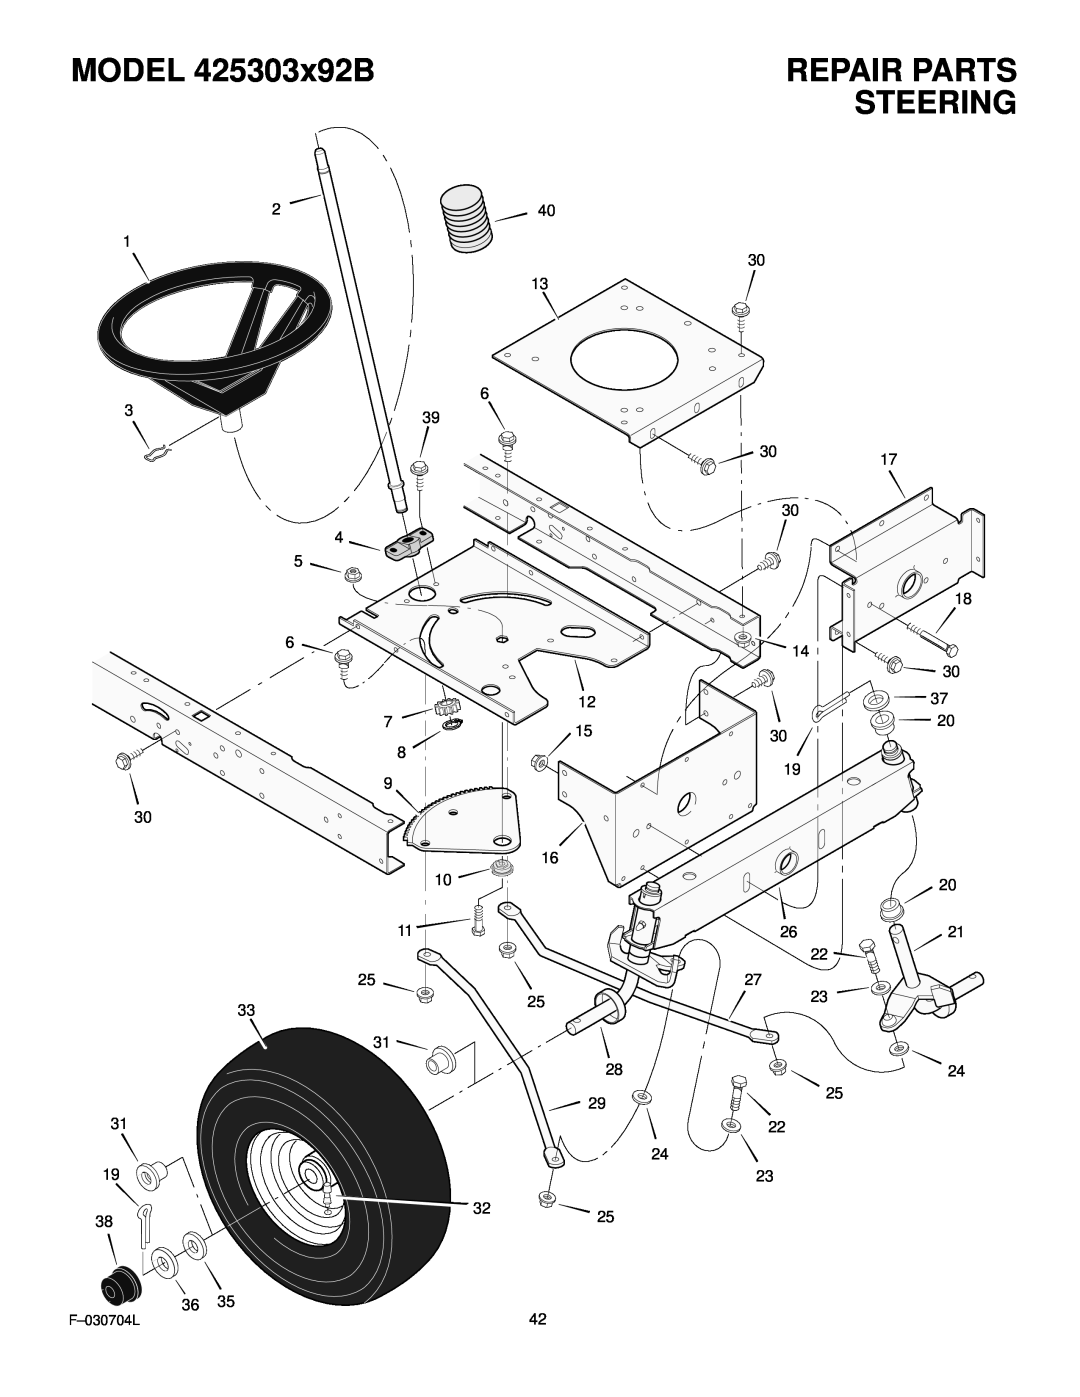 Murray manual Steering, MODEL 425303x92B, Repair Parts 